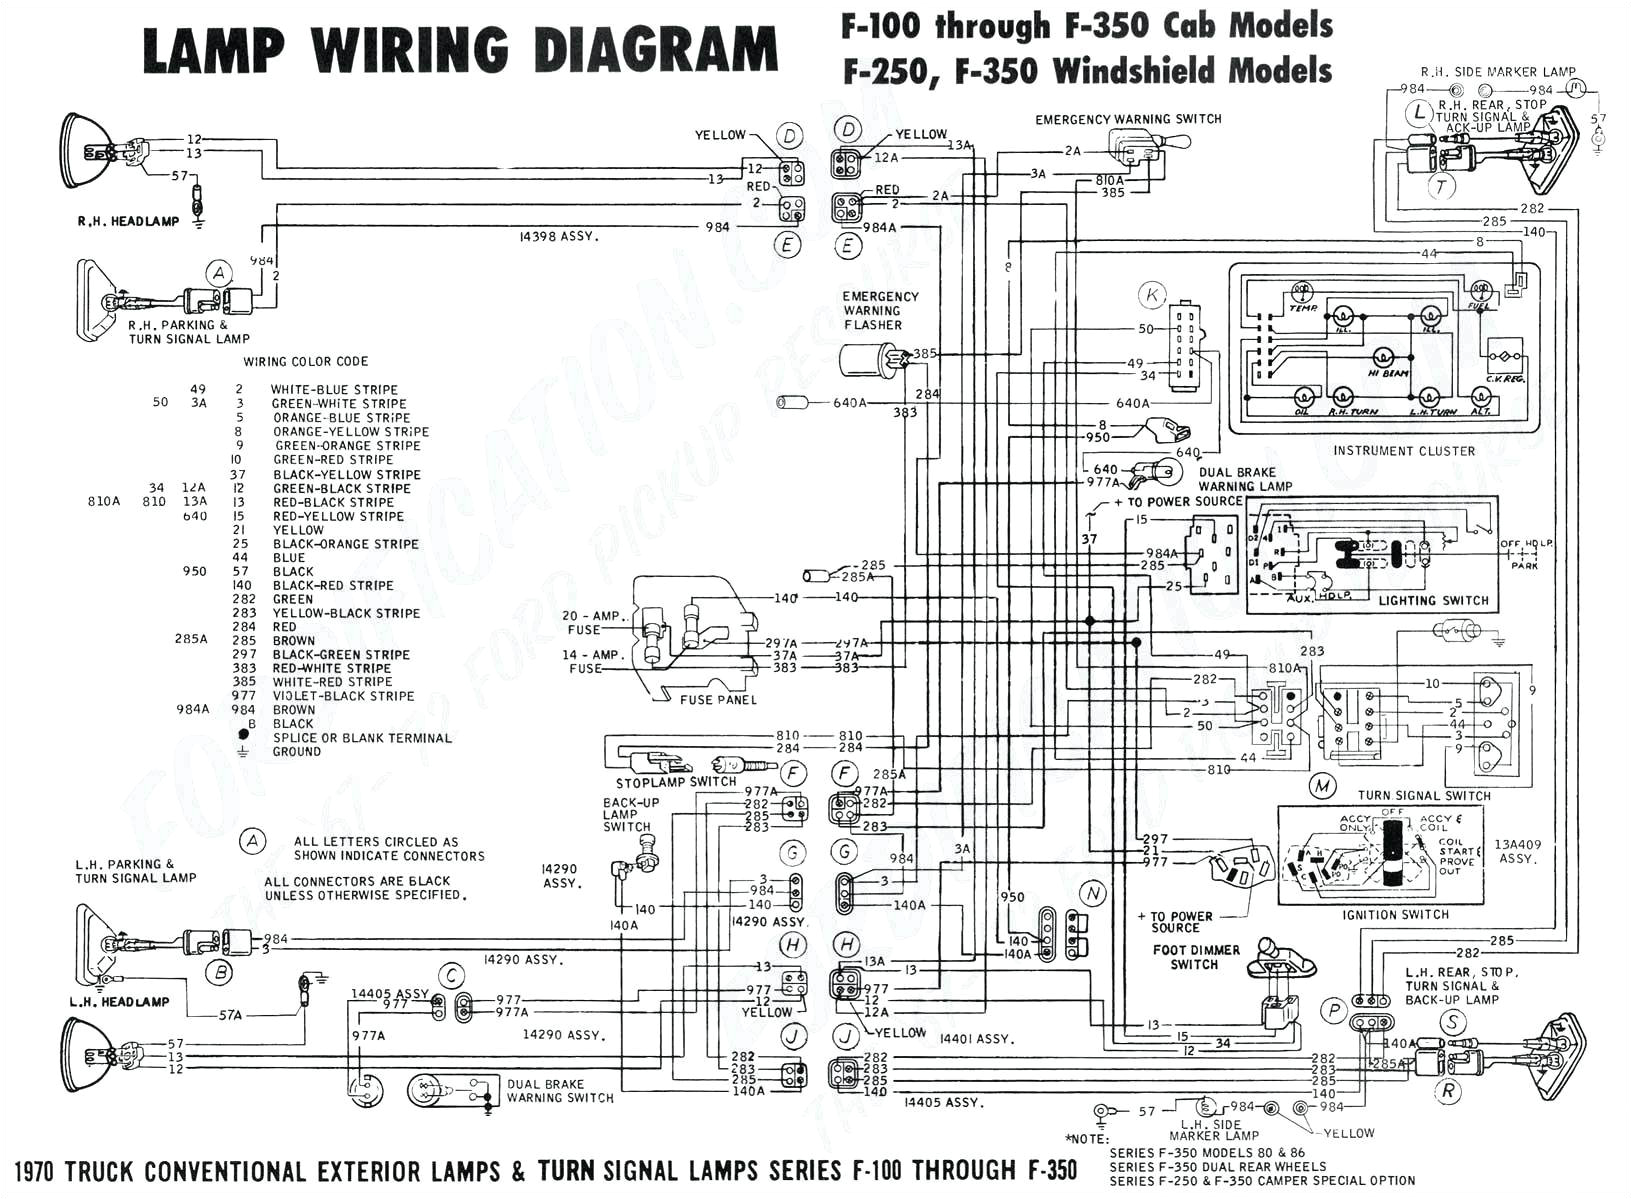 Pioneer Fh X720bt Wiring Diagram Fh X700bt Wiring Diagram Wiring Diagram Inside